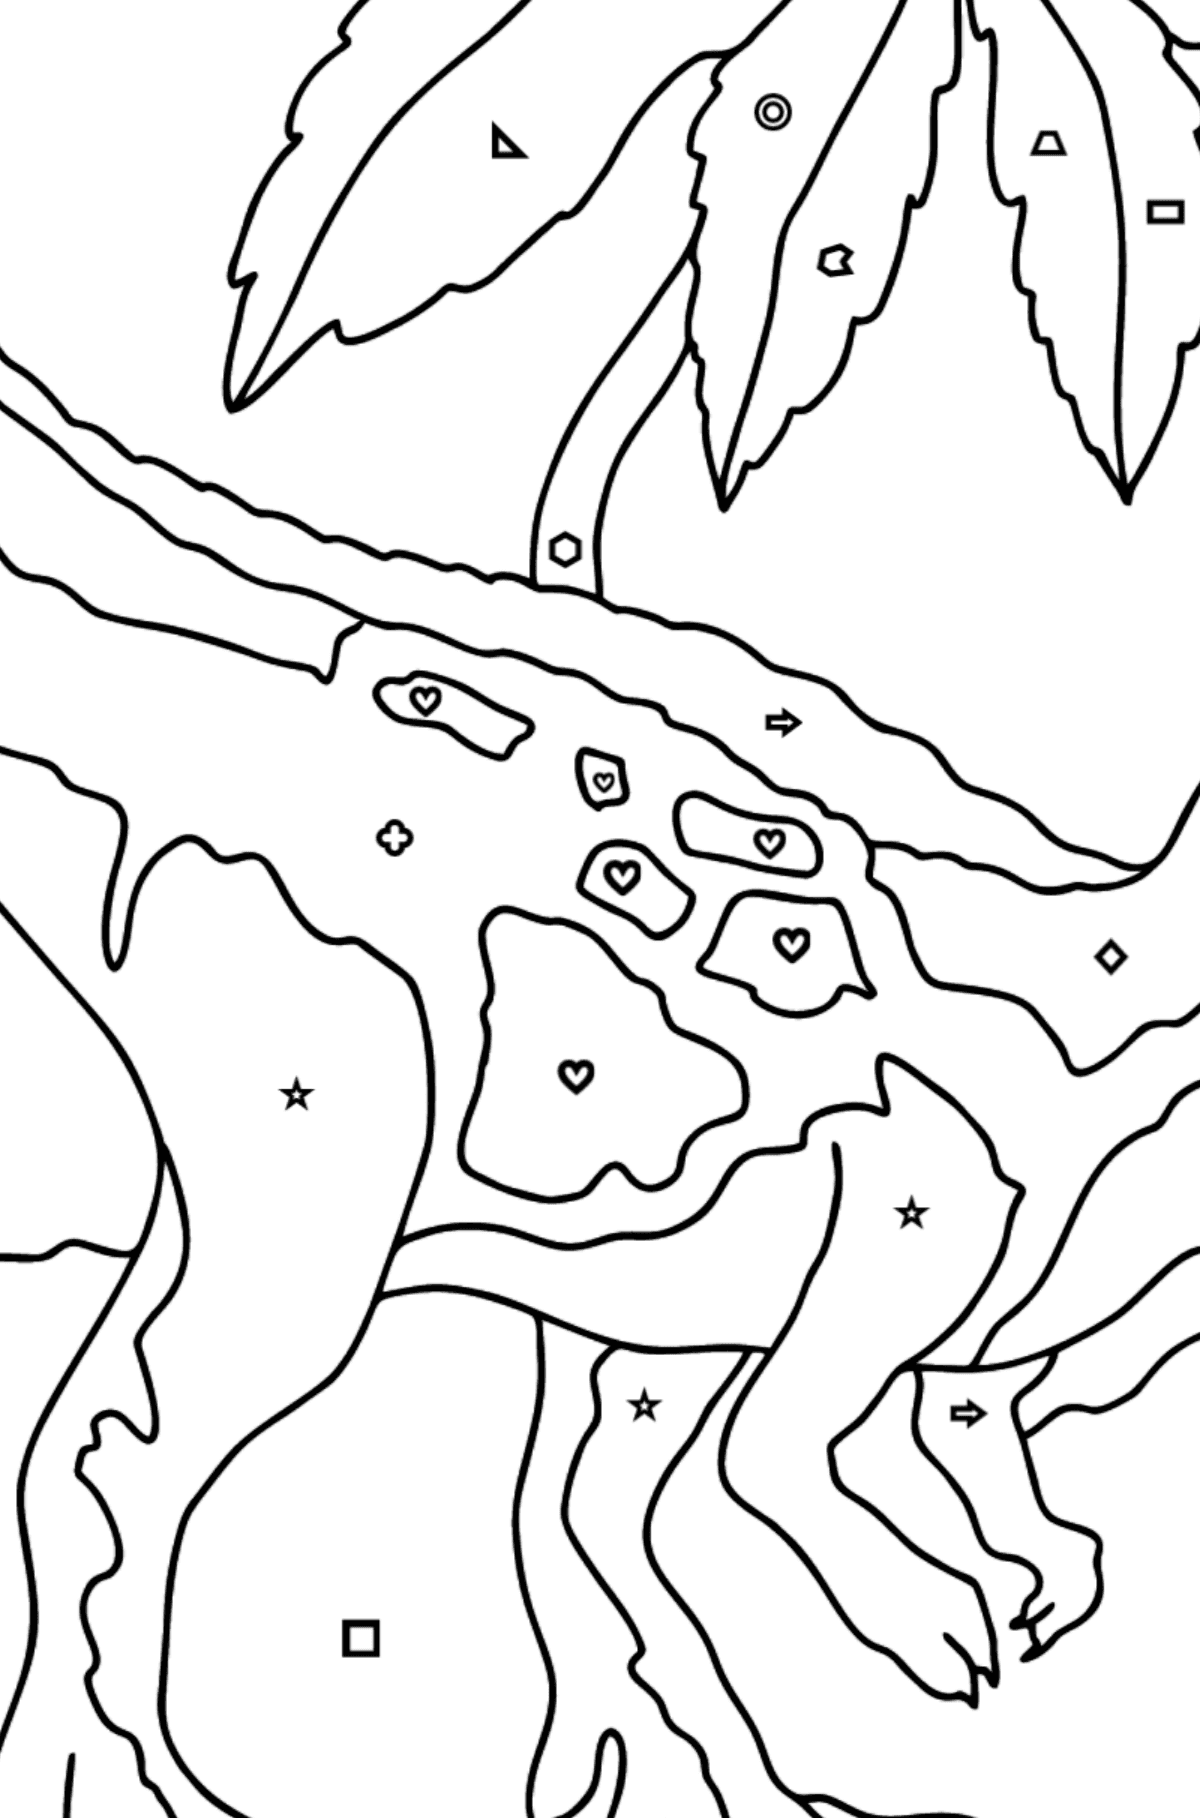 Desenho para colorir do predador tiranossauro (difícil) - Colorir por Formas Geométricas para Crianças